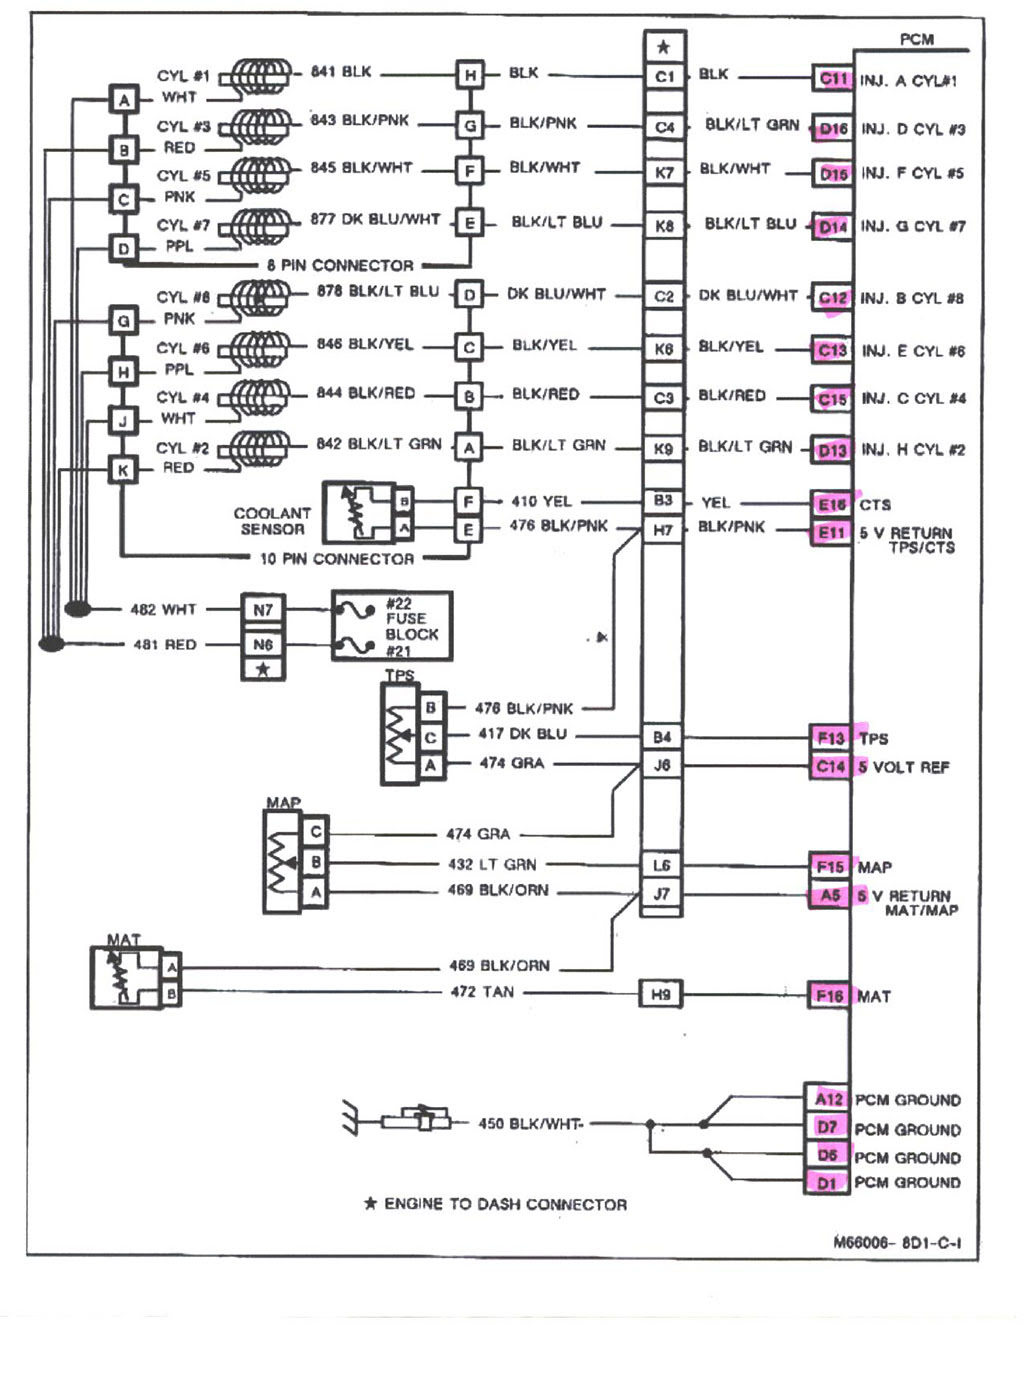 Speedo Tuner Wiring Diagram - Complete Wiring Schemas